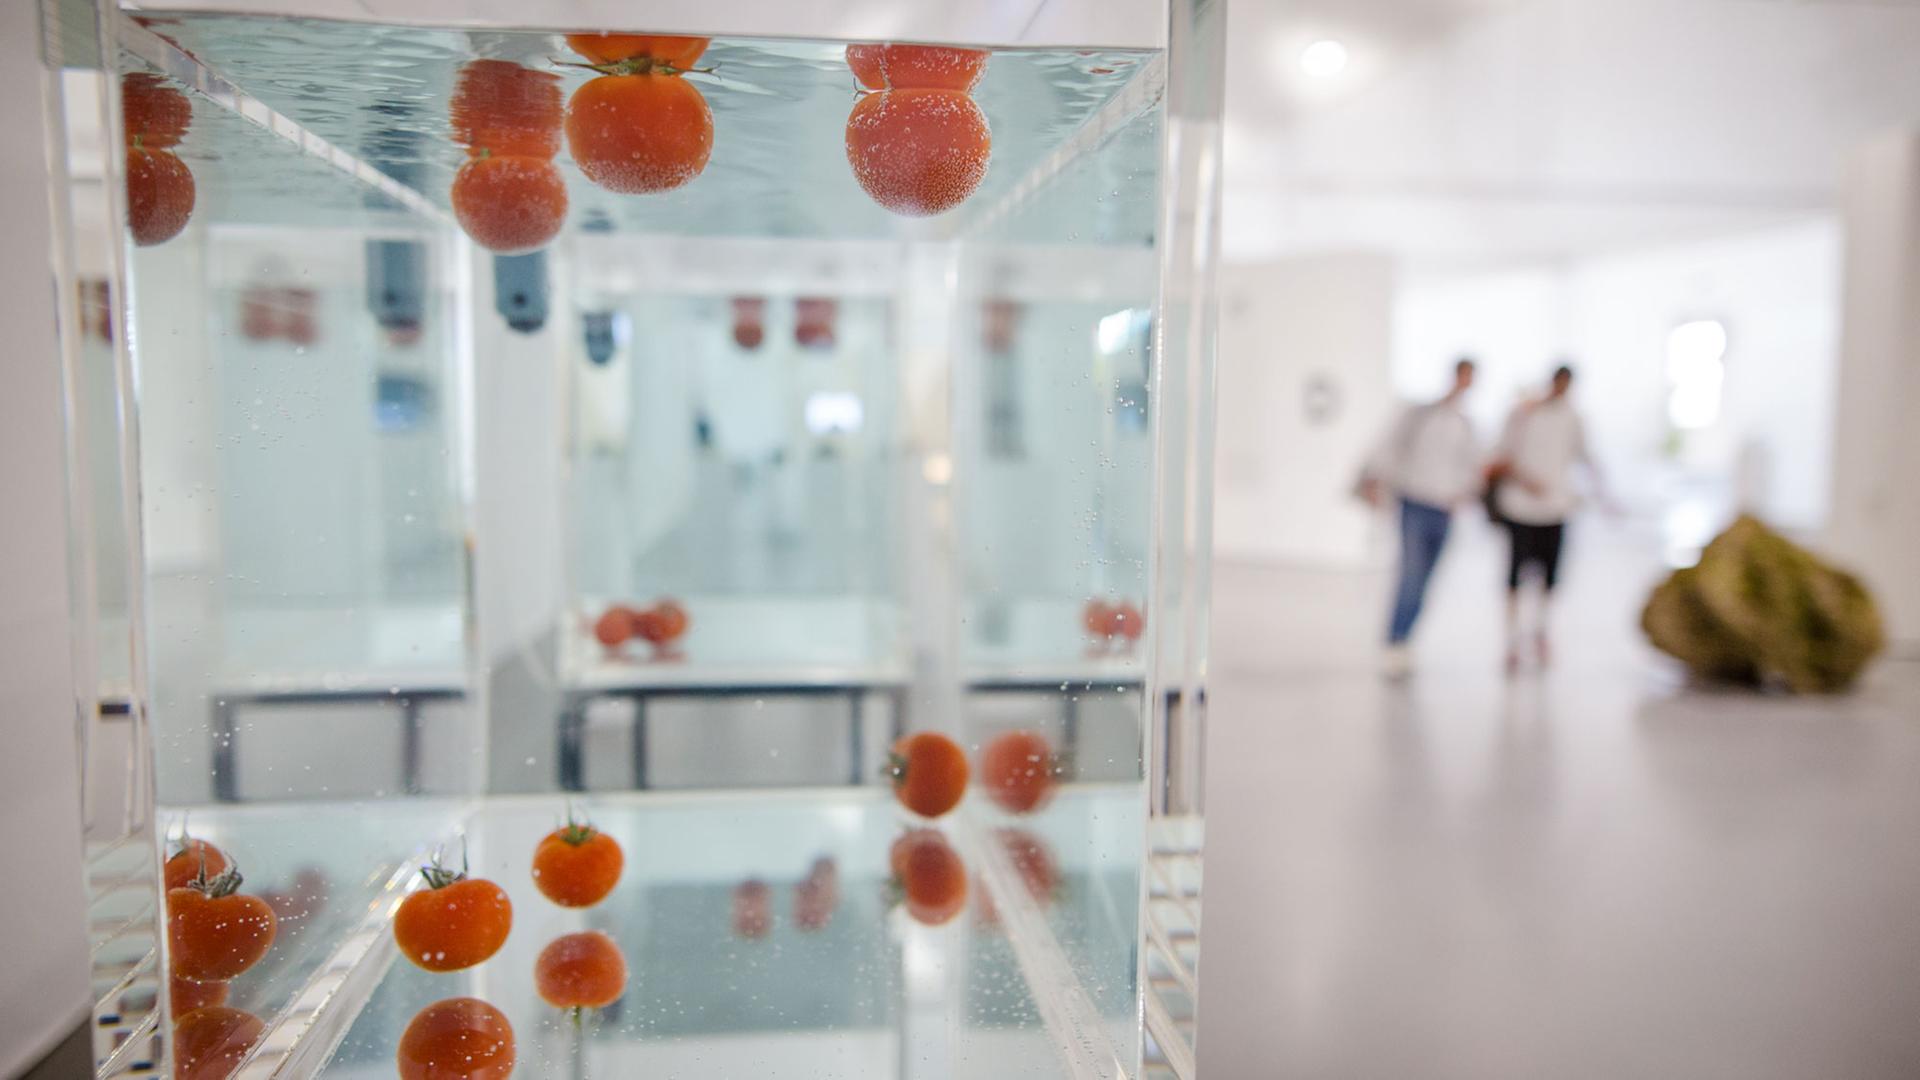 Tomaten schwimmen bei der 13. Triennale Kleinplastik in der Alten Kelter in Fellbach als Teil des Kunstwerkes "Something that Floats/Something that sinks" des Künstlers Shimabuku in einem Aquarium.